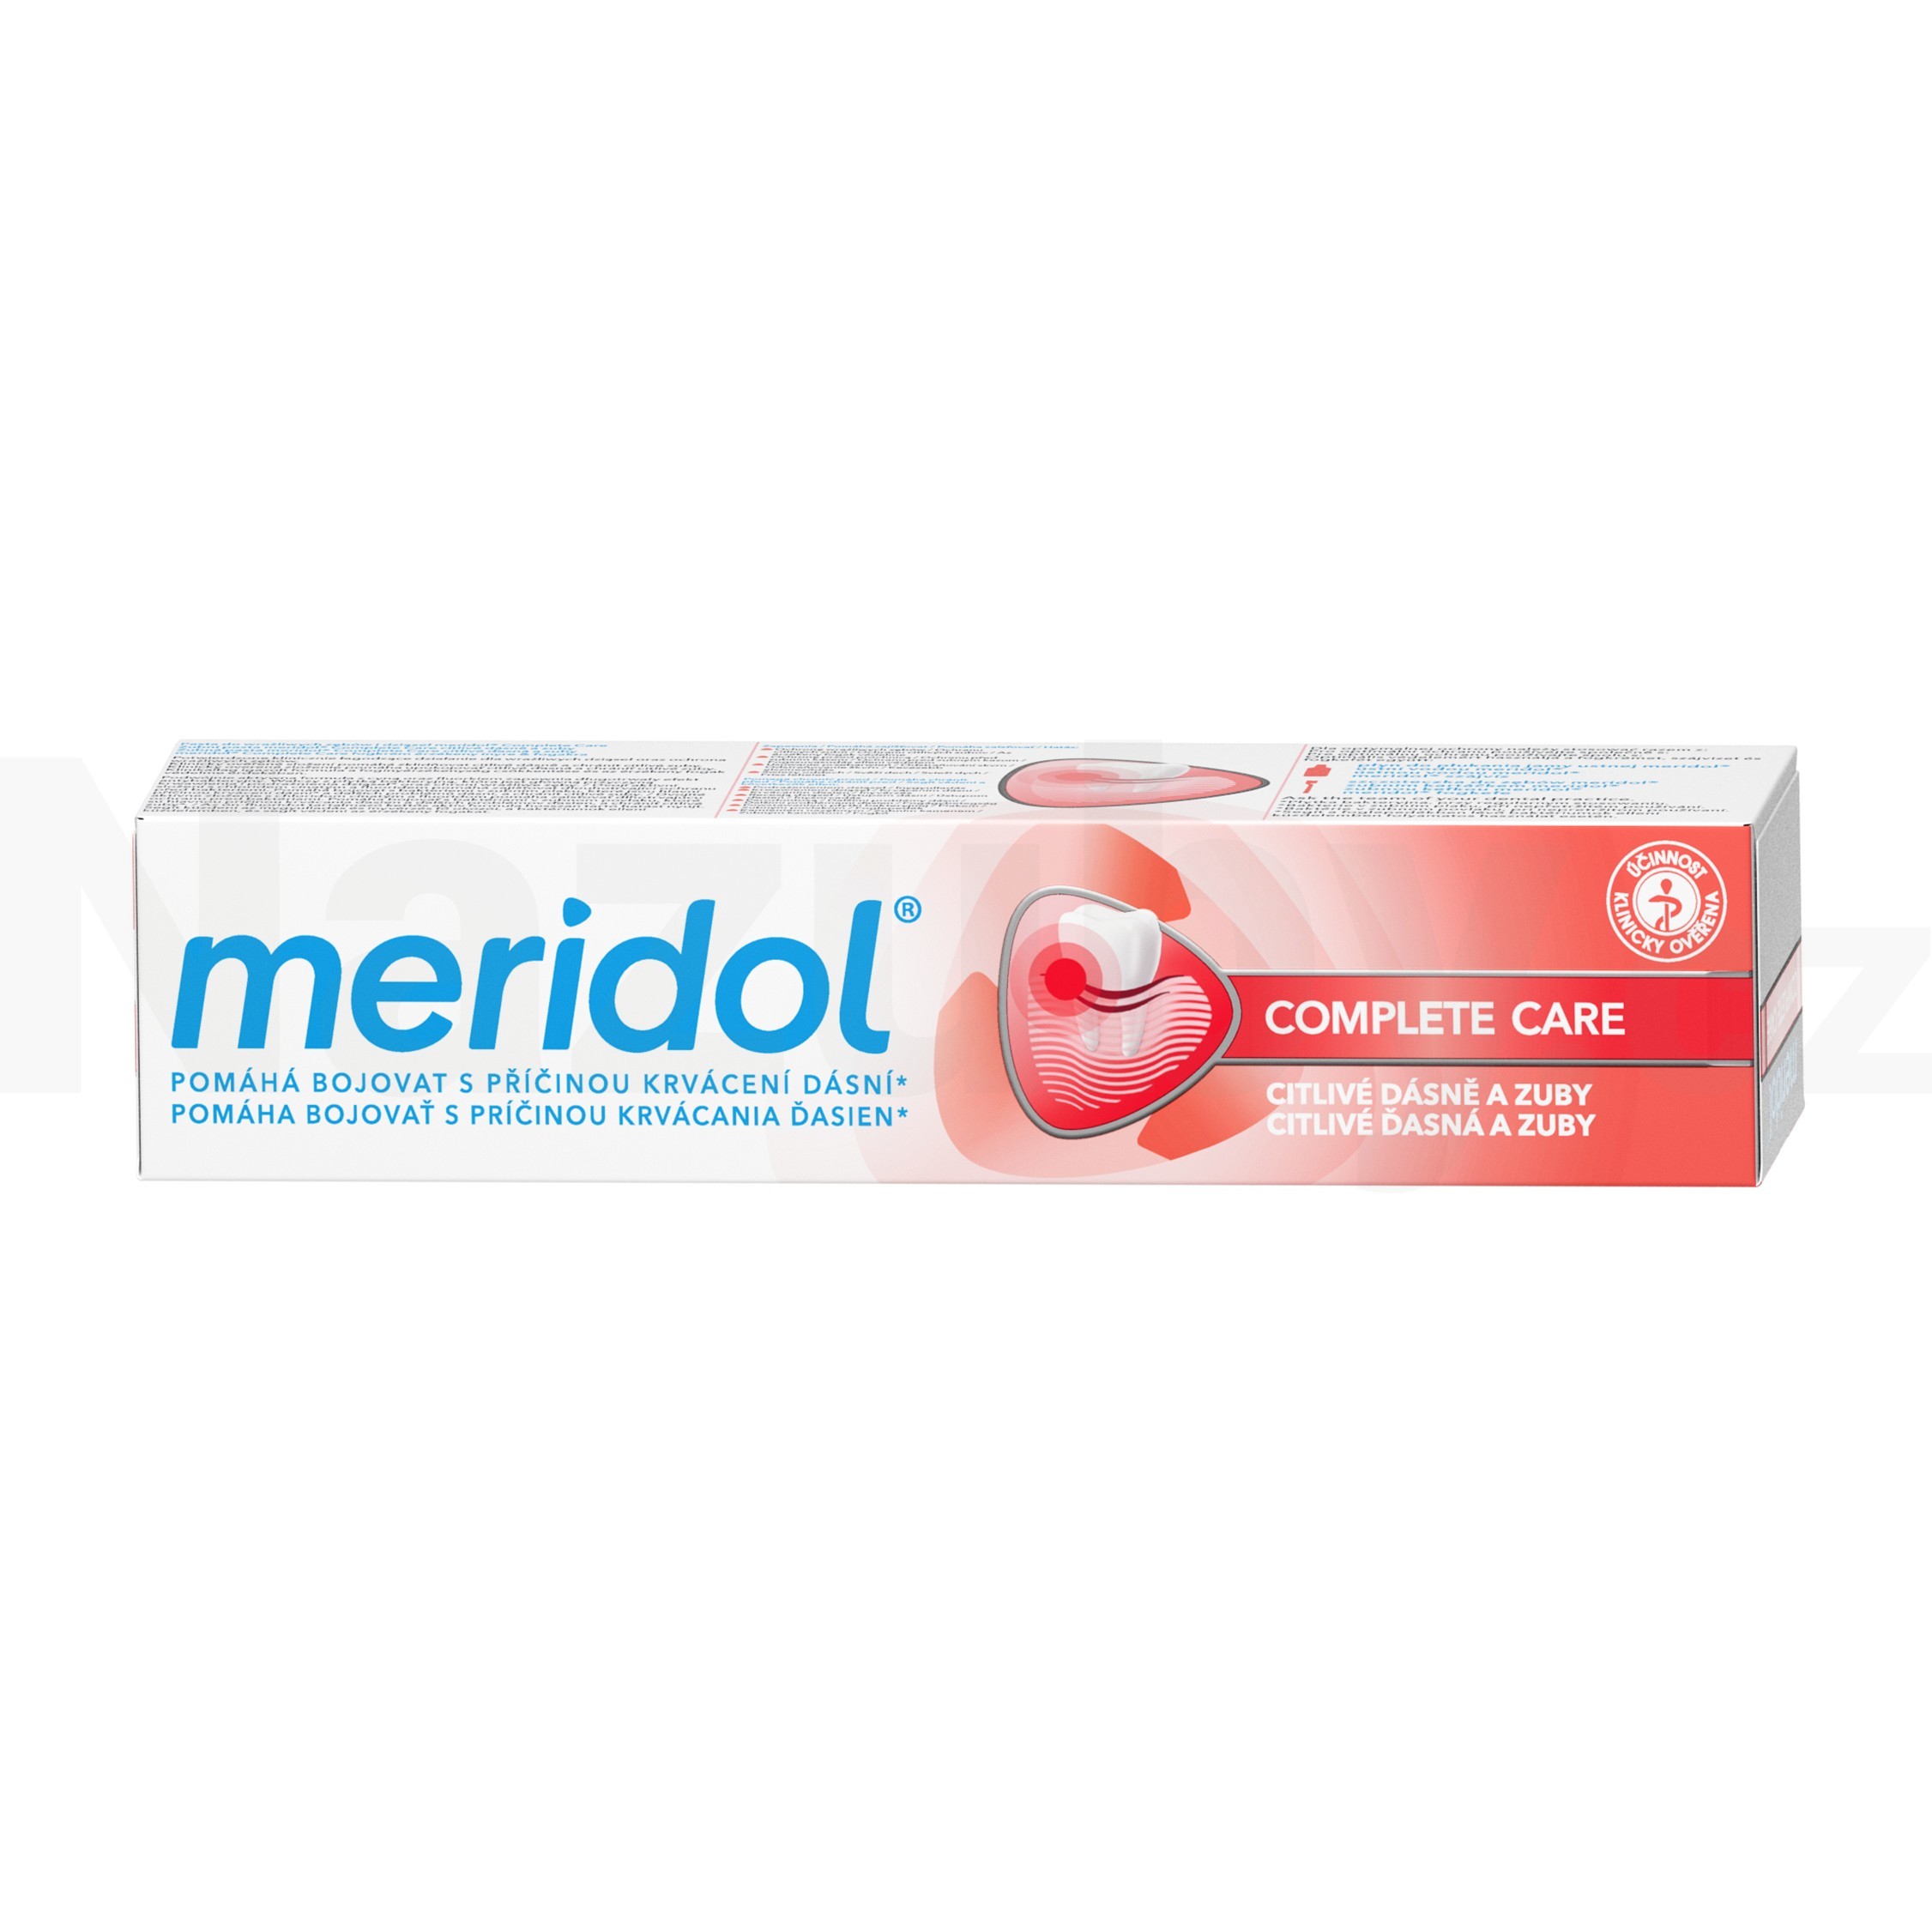 Fotografie Meridol® Complete Care citlivé dásně a zuby zubní pasta 75 ml